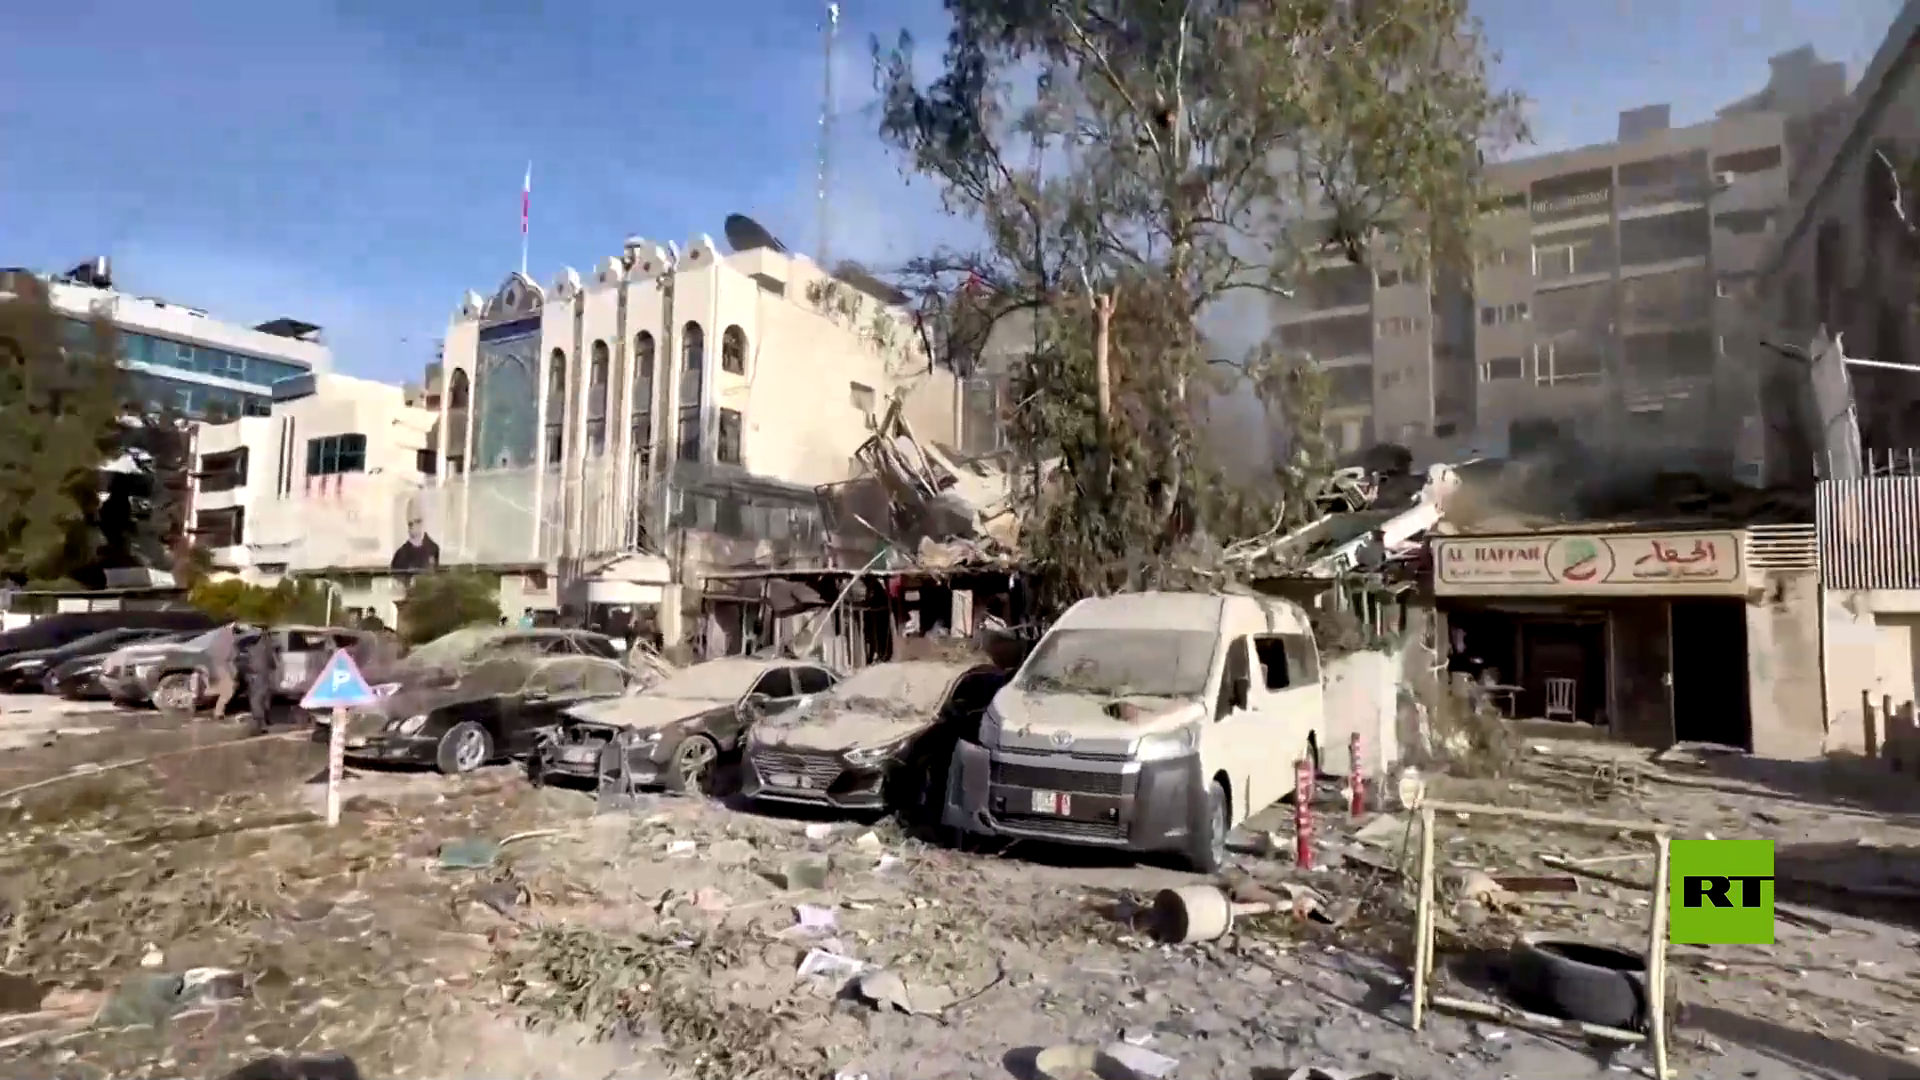 إعلام سوري: العدوان الإسرائيلي استهدف مبنى قنصلية إيران وألحق دمارا كبيرا فيه ولكن الدبلوماسيين بخير